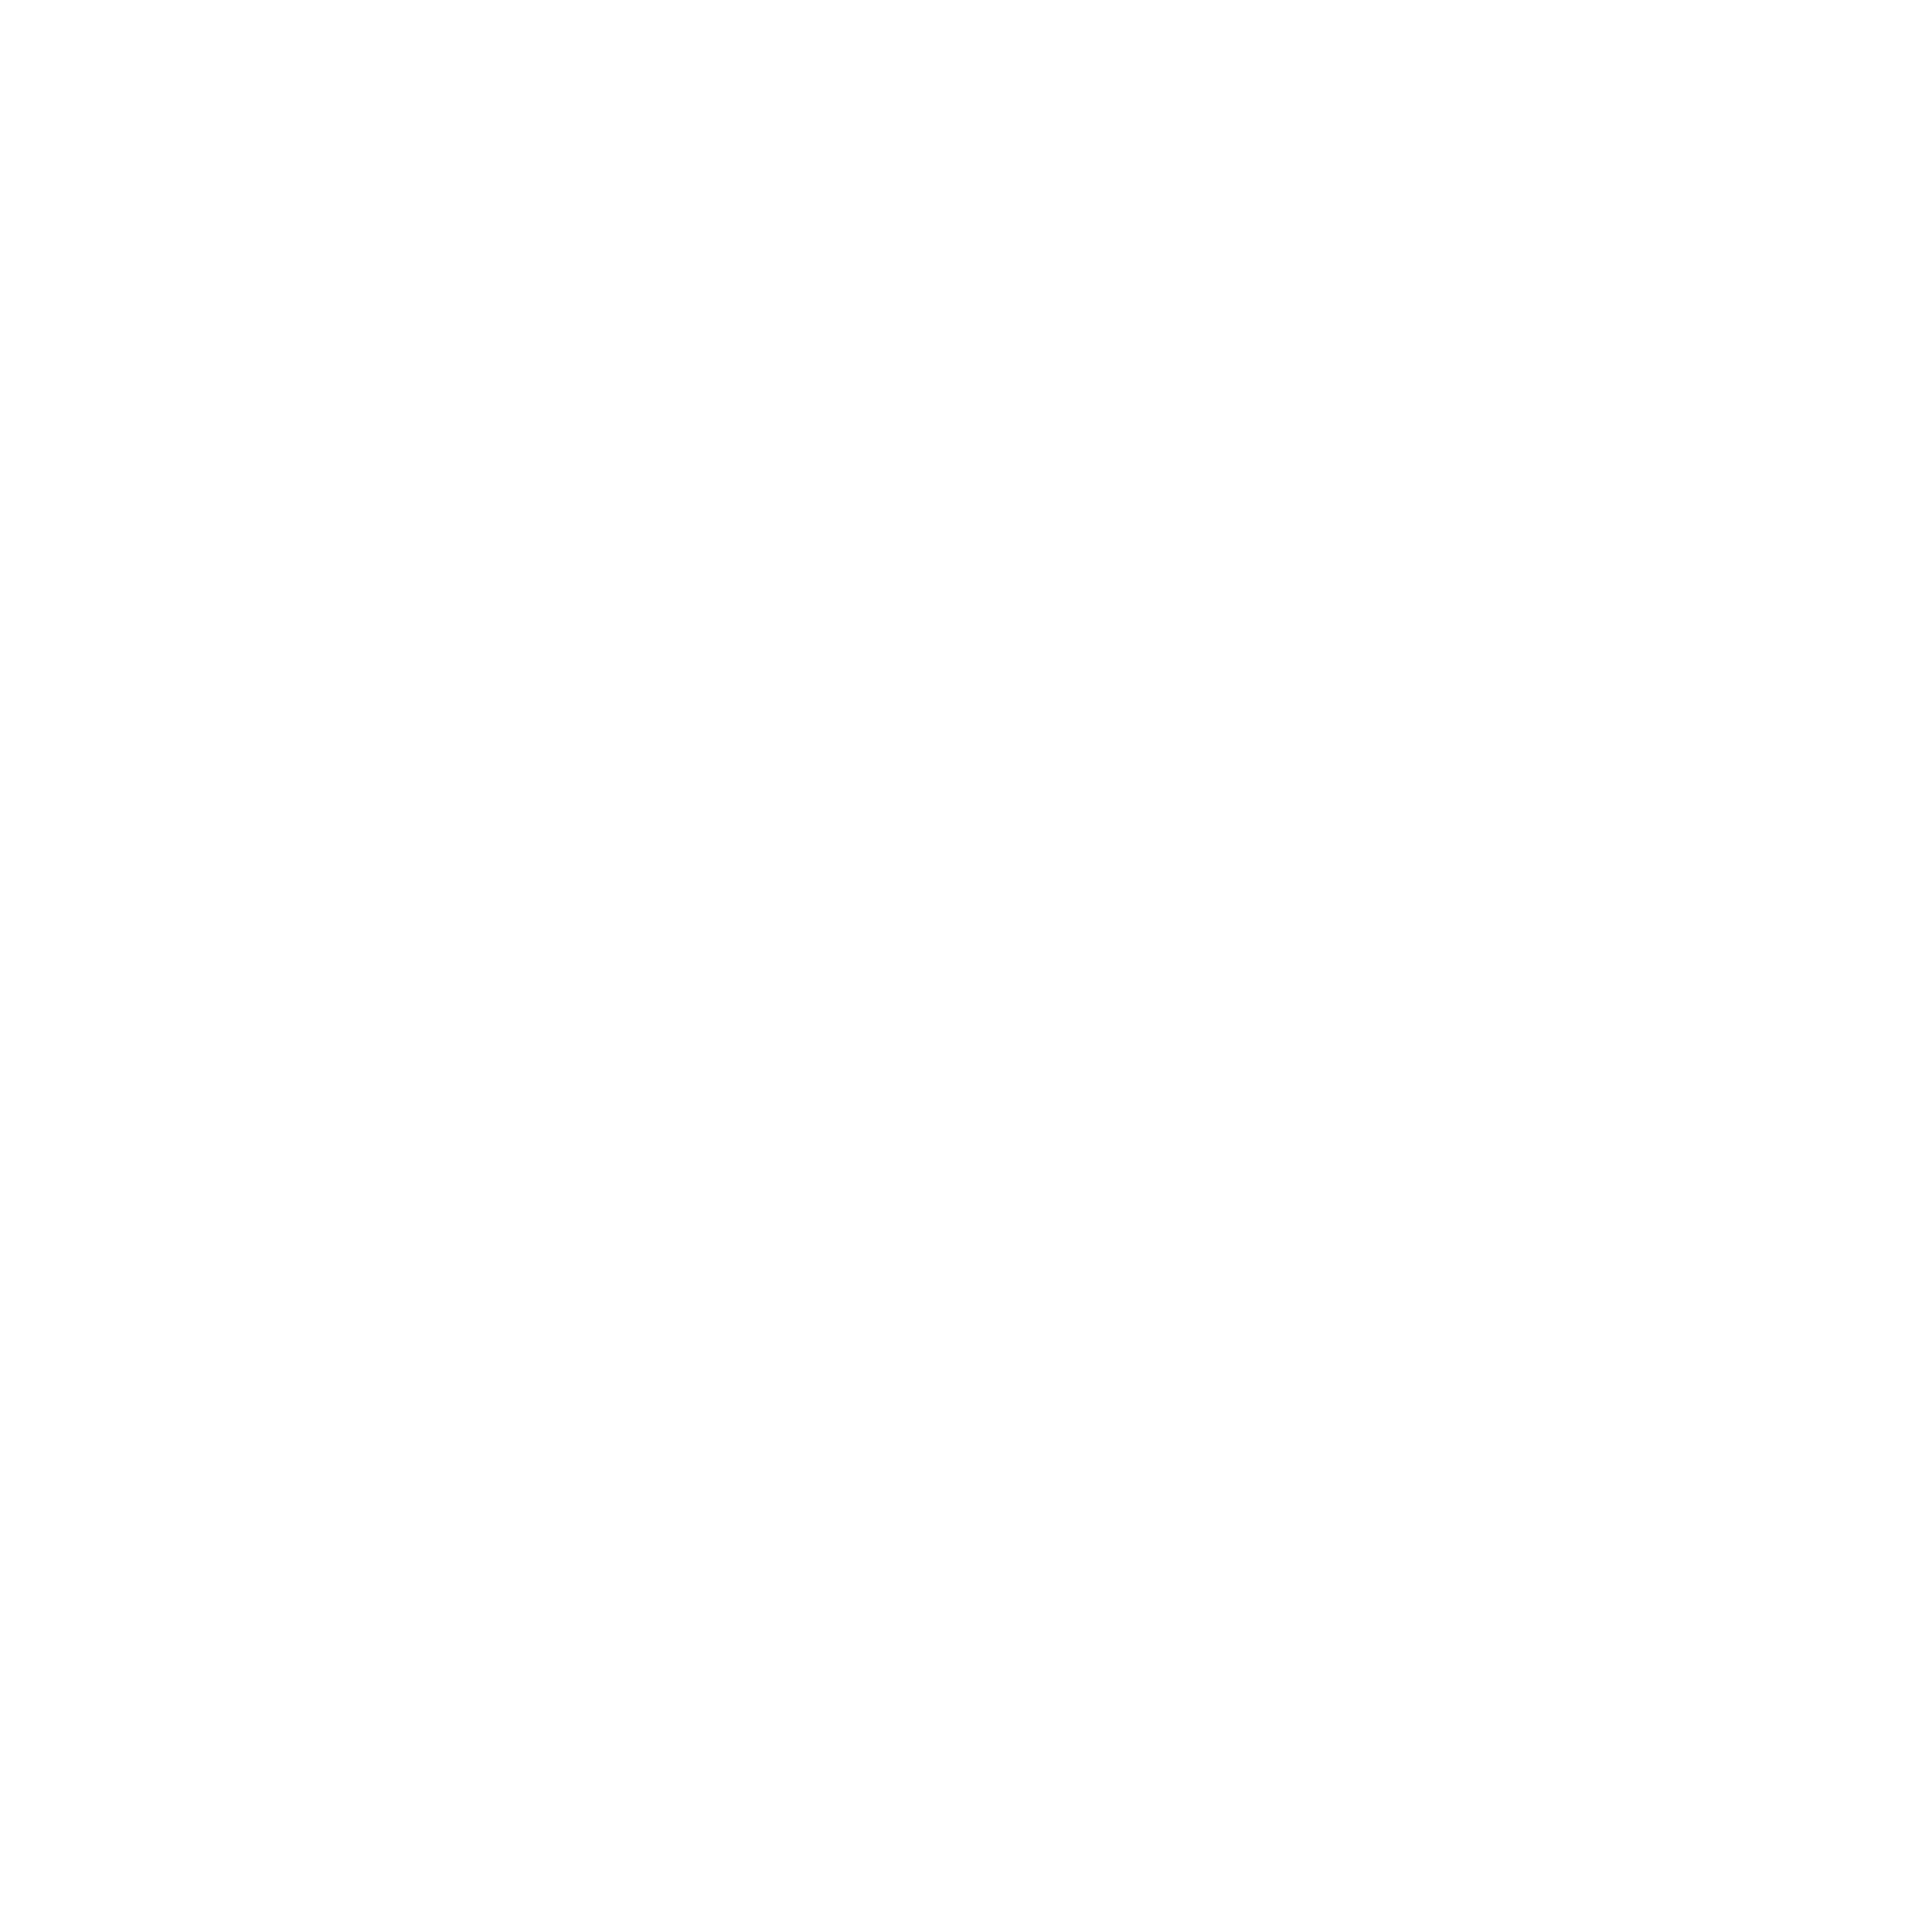 Escale for fun